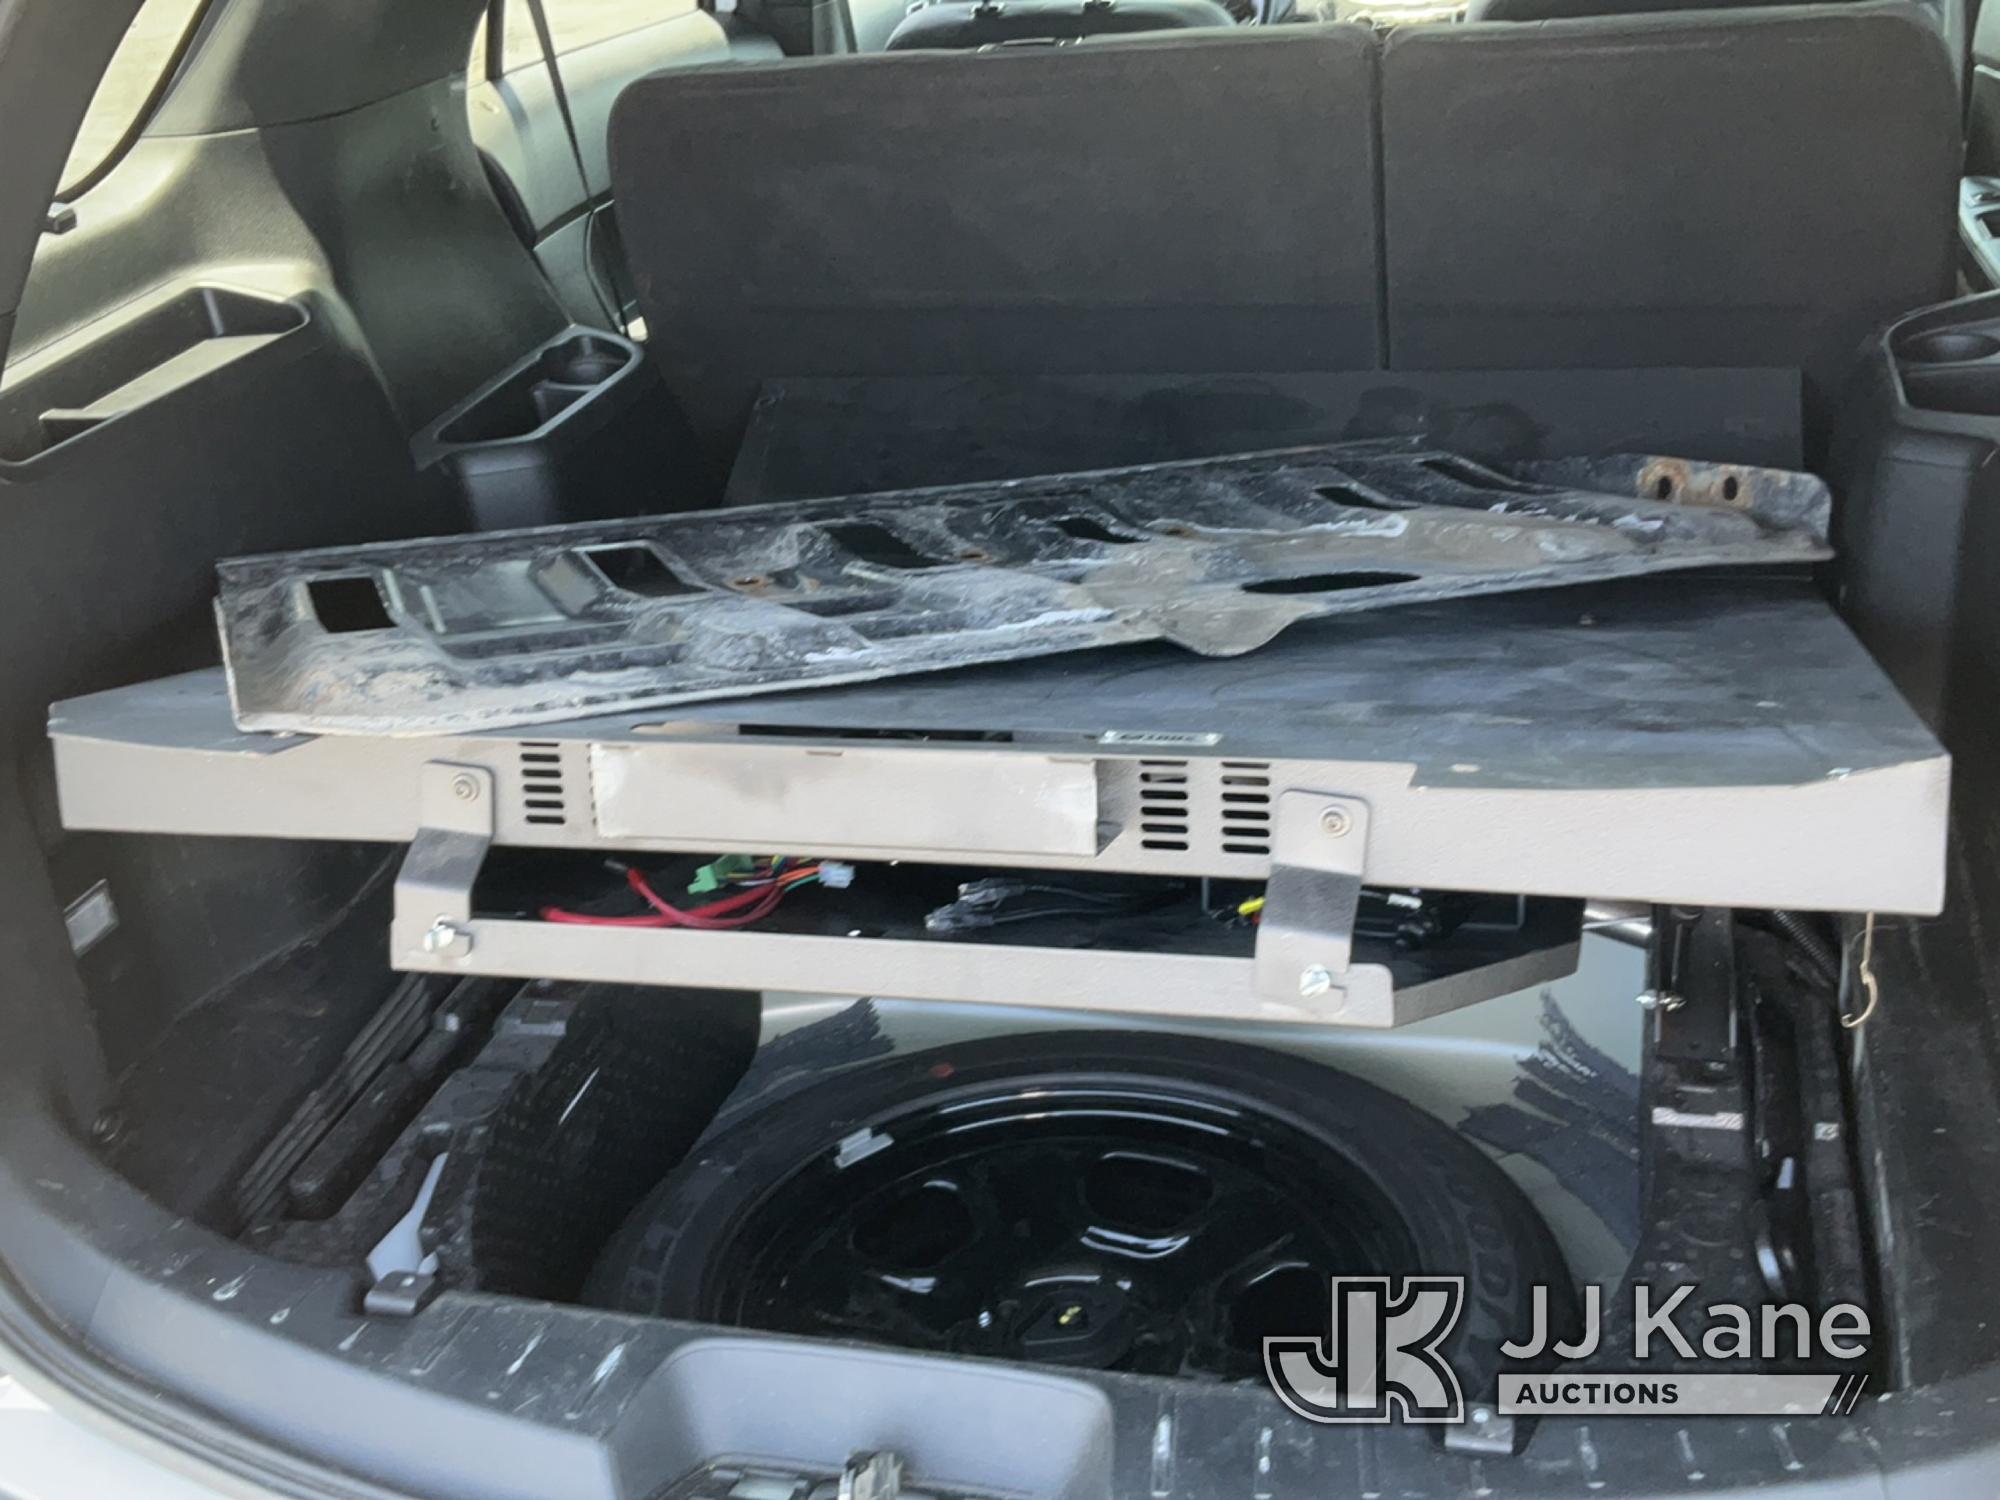 (Salt Lake City, UT) 2018 Ford Explorer 4x4 Police 4-Door Sport Utility Vehicle Runs & Moves